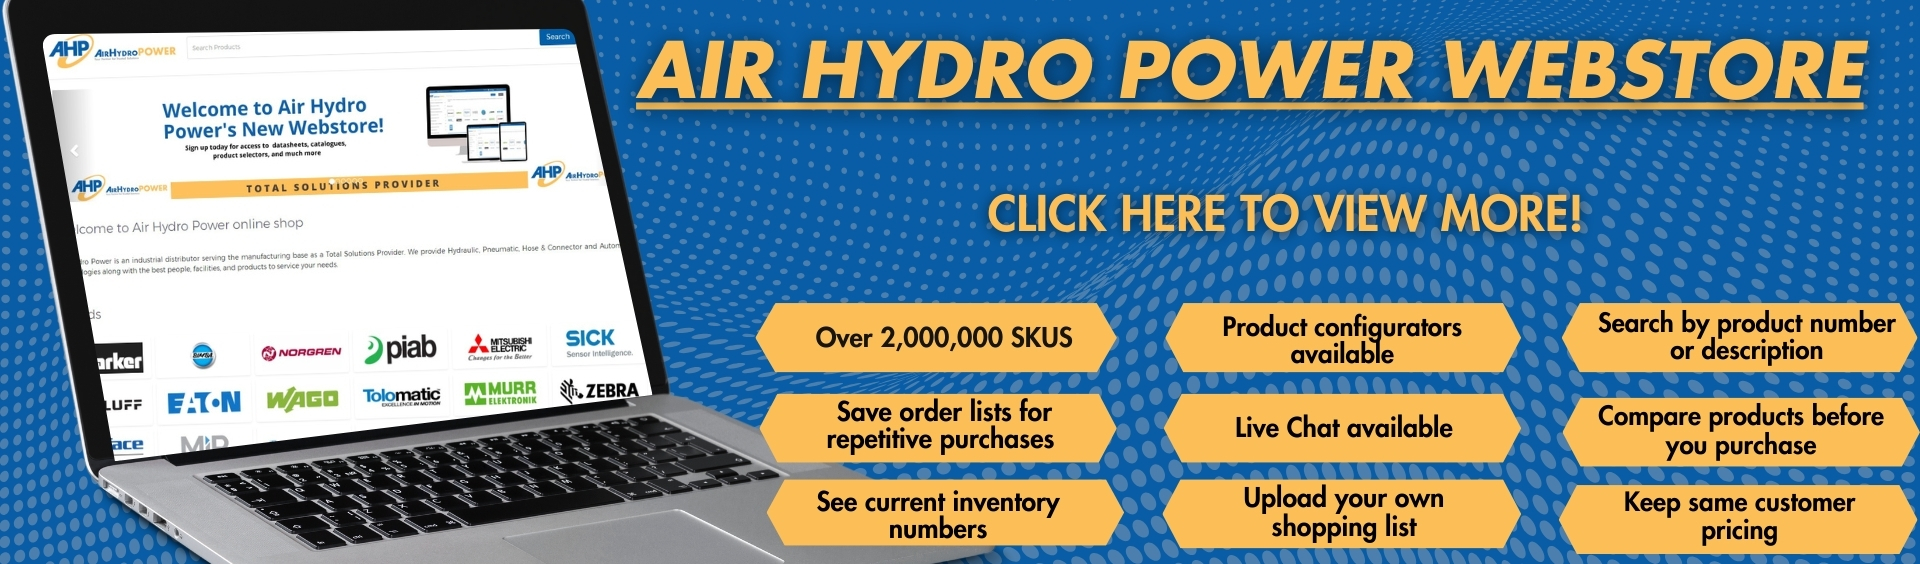 Air Hydro Power banner